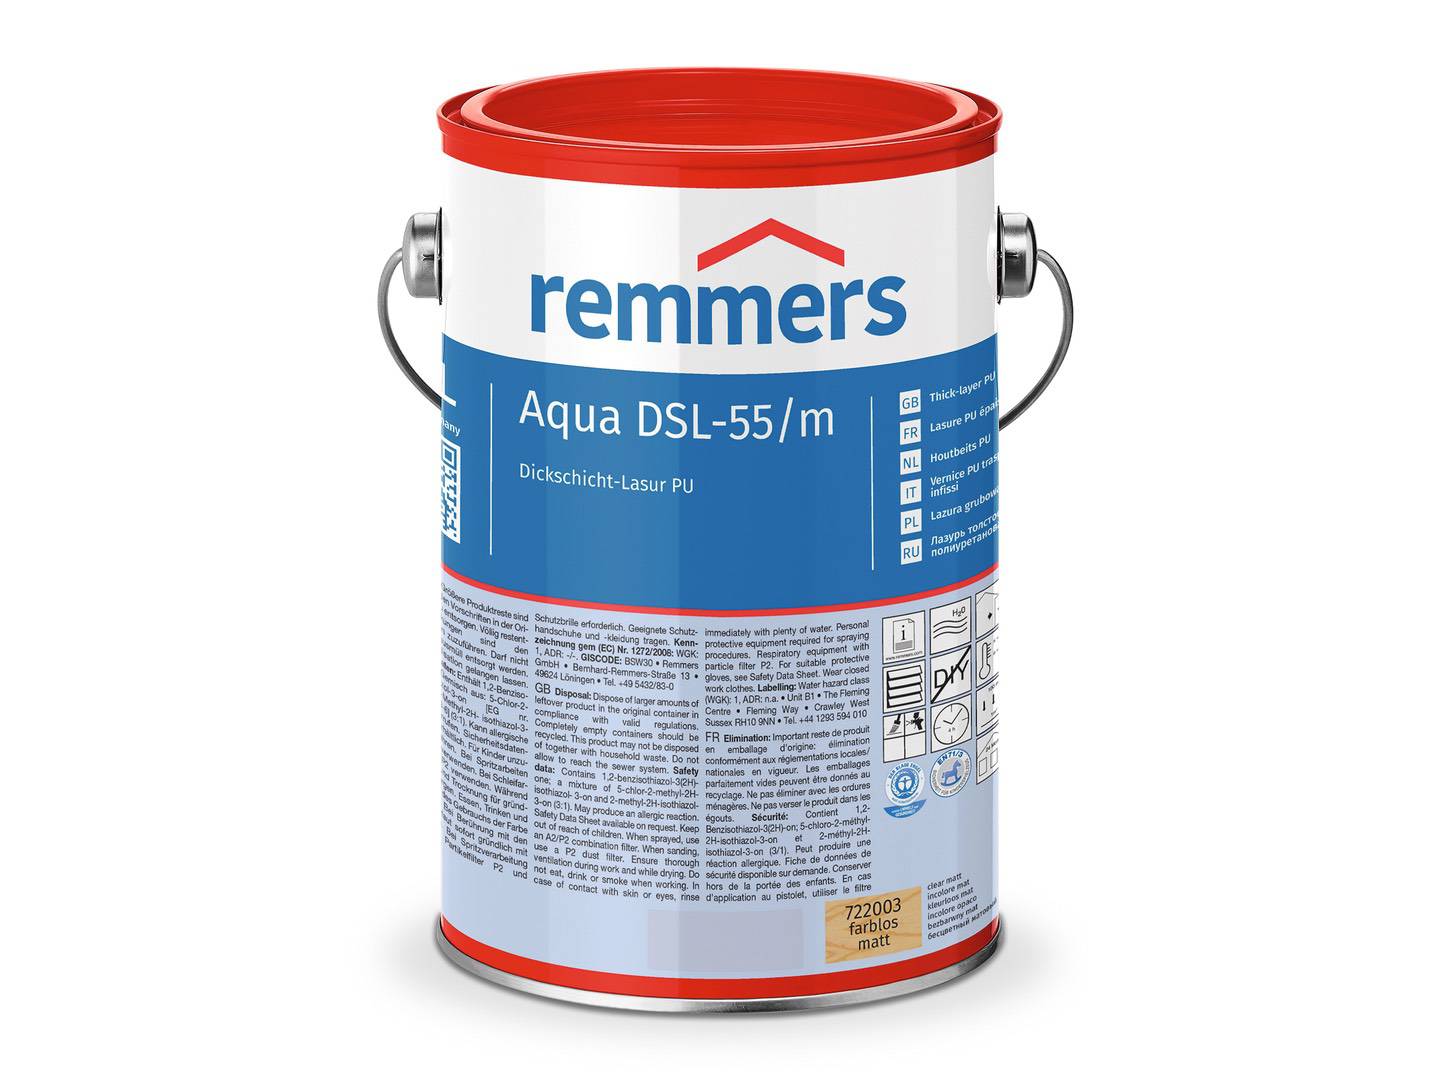 REMMERS Aqua DSL-55-Dickschicht-Lasur PU farblos seidenglänzend 0,75 l